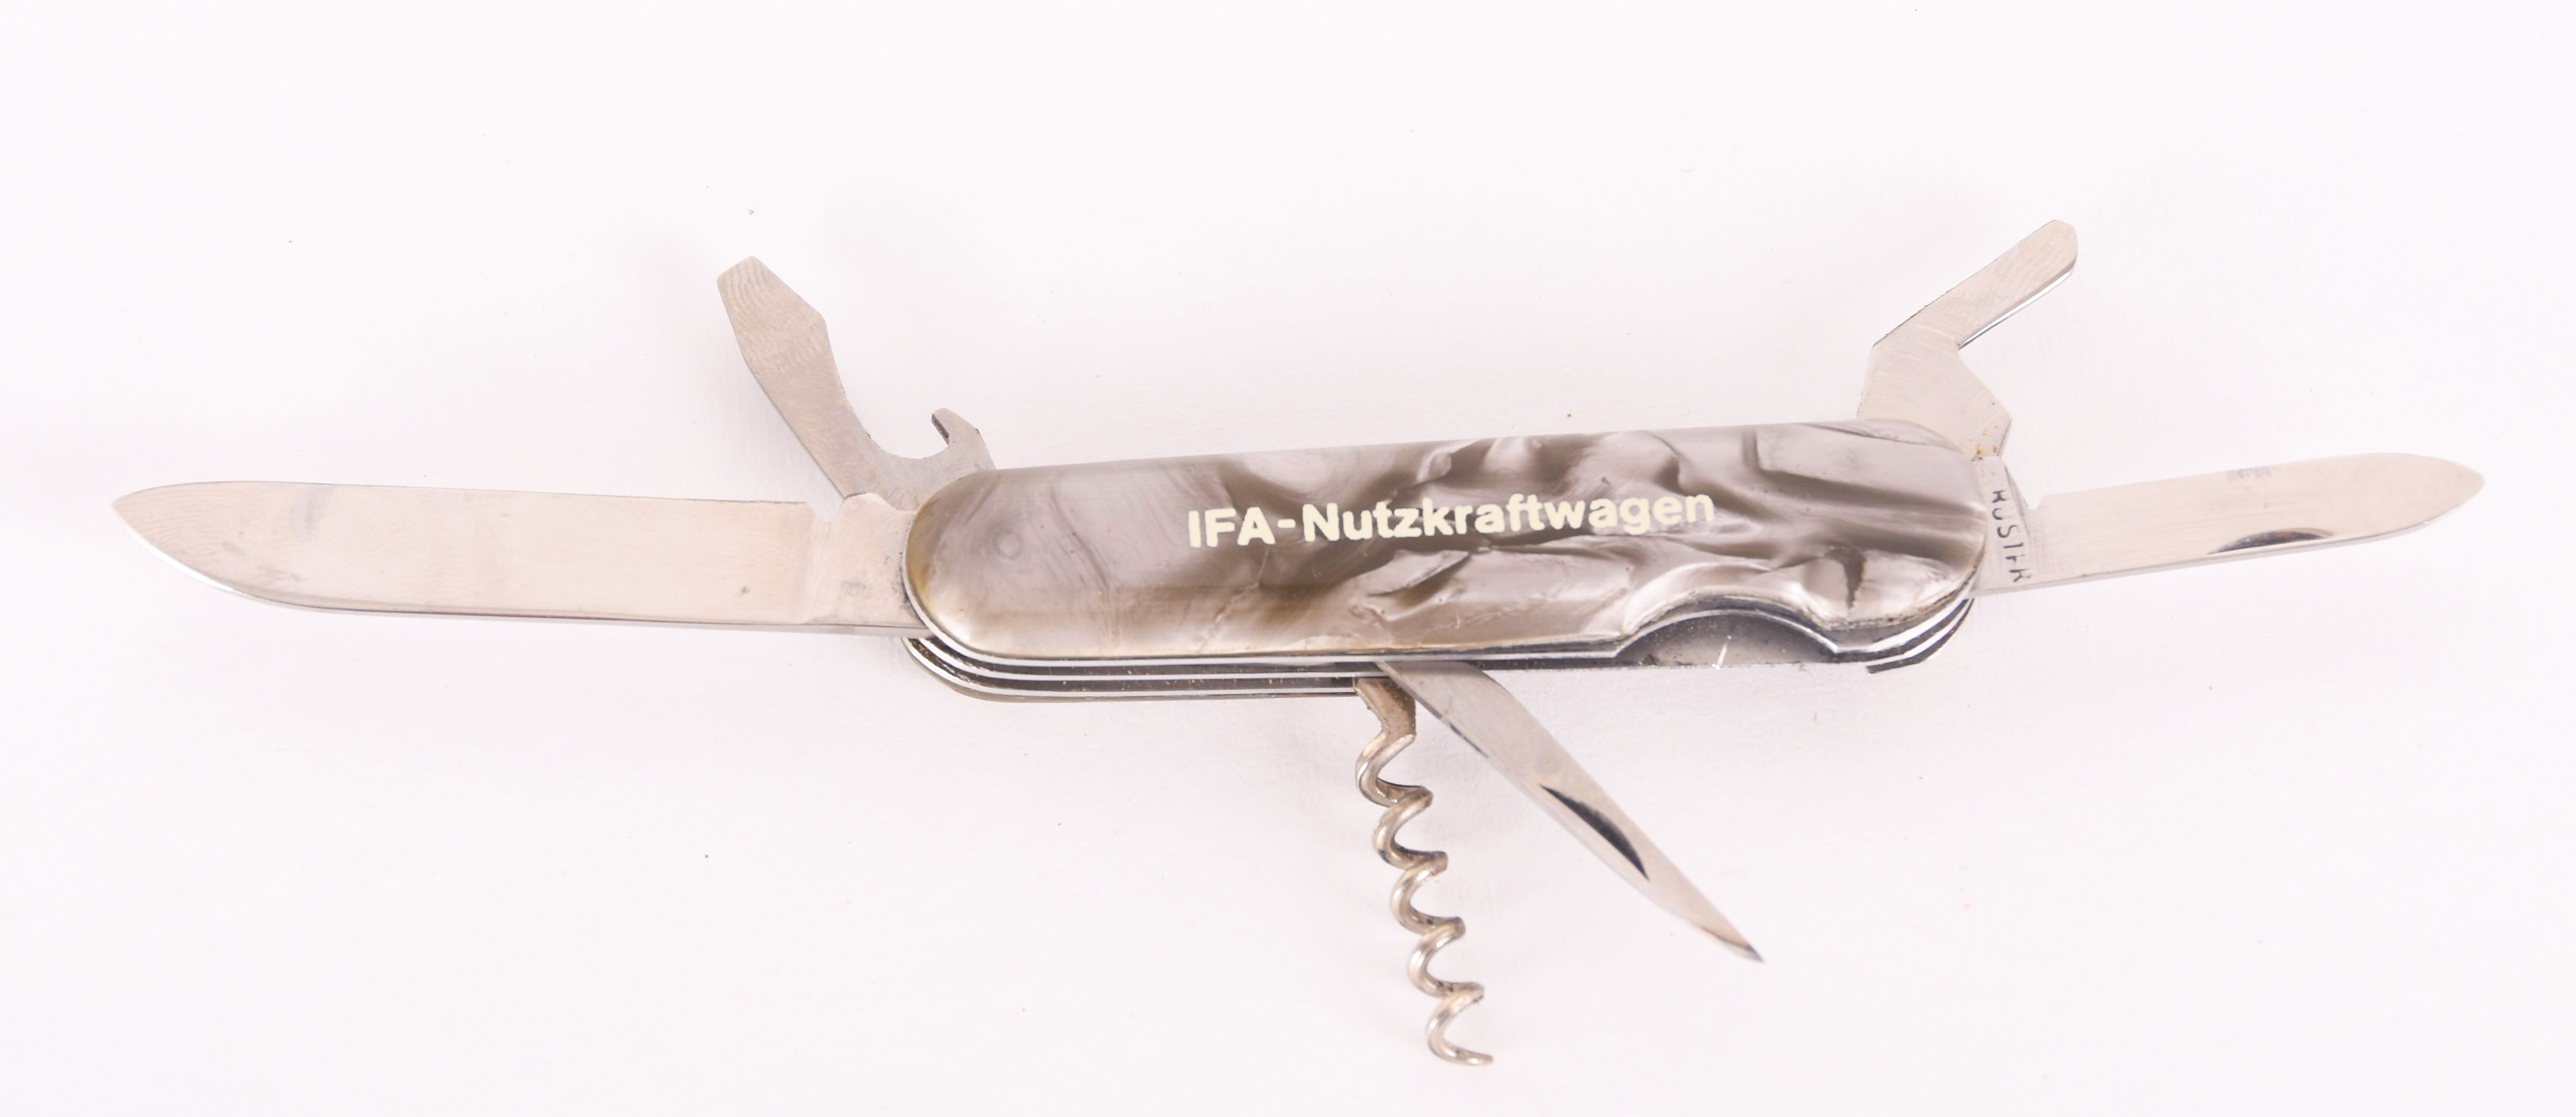 Taschenmesser "IFA-Nutzkraftwagen" (Museum für Stadt und Technik Ludwigsfelde CC BY-NC-SA)